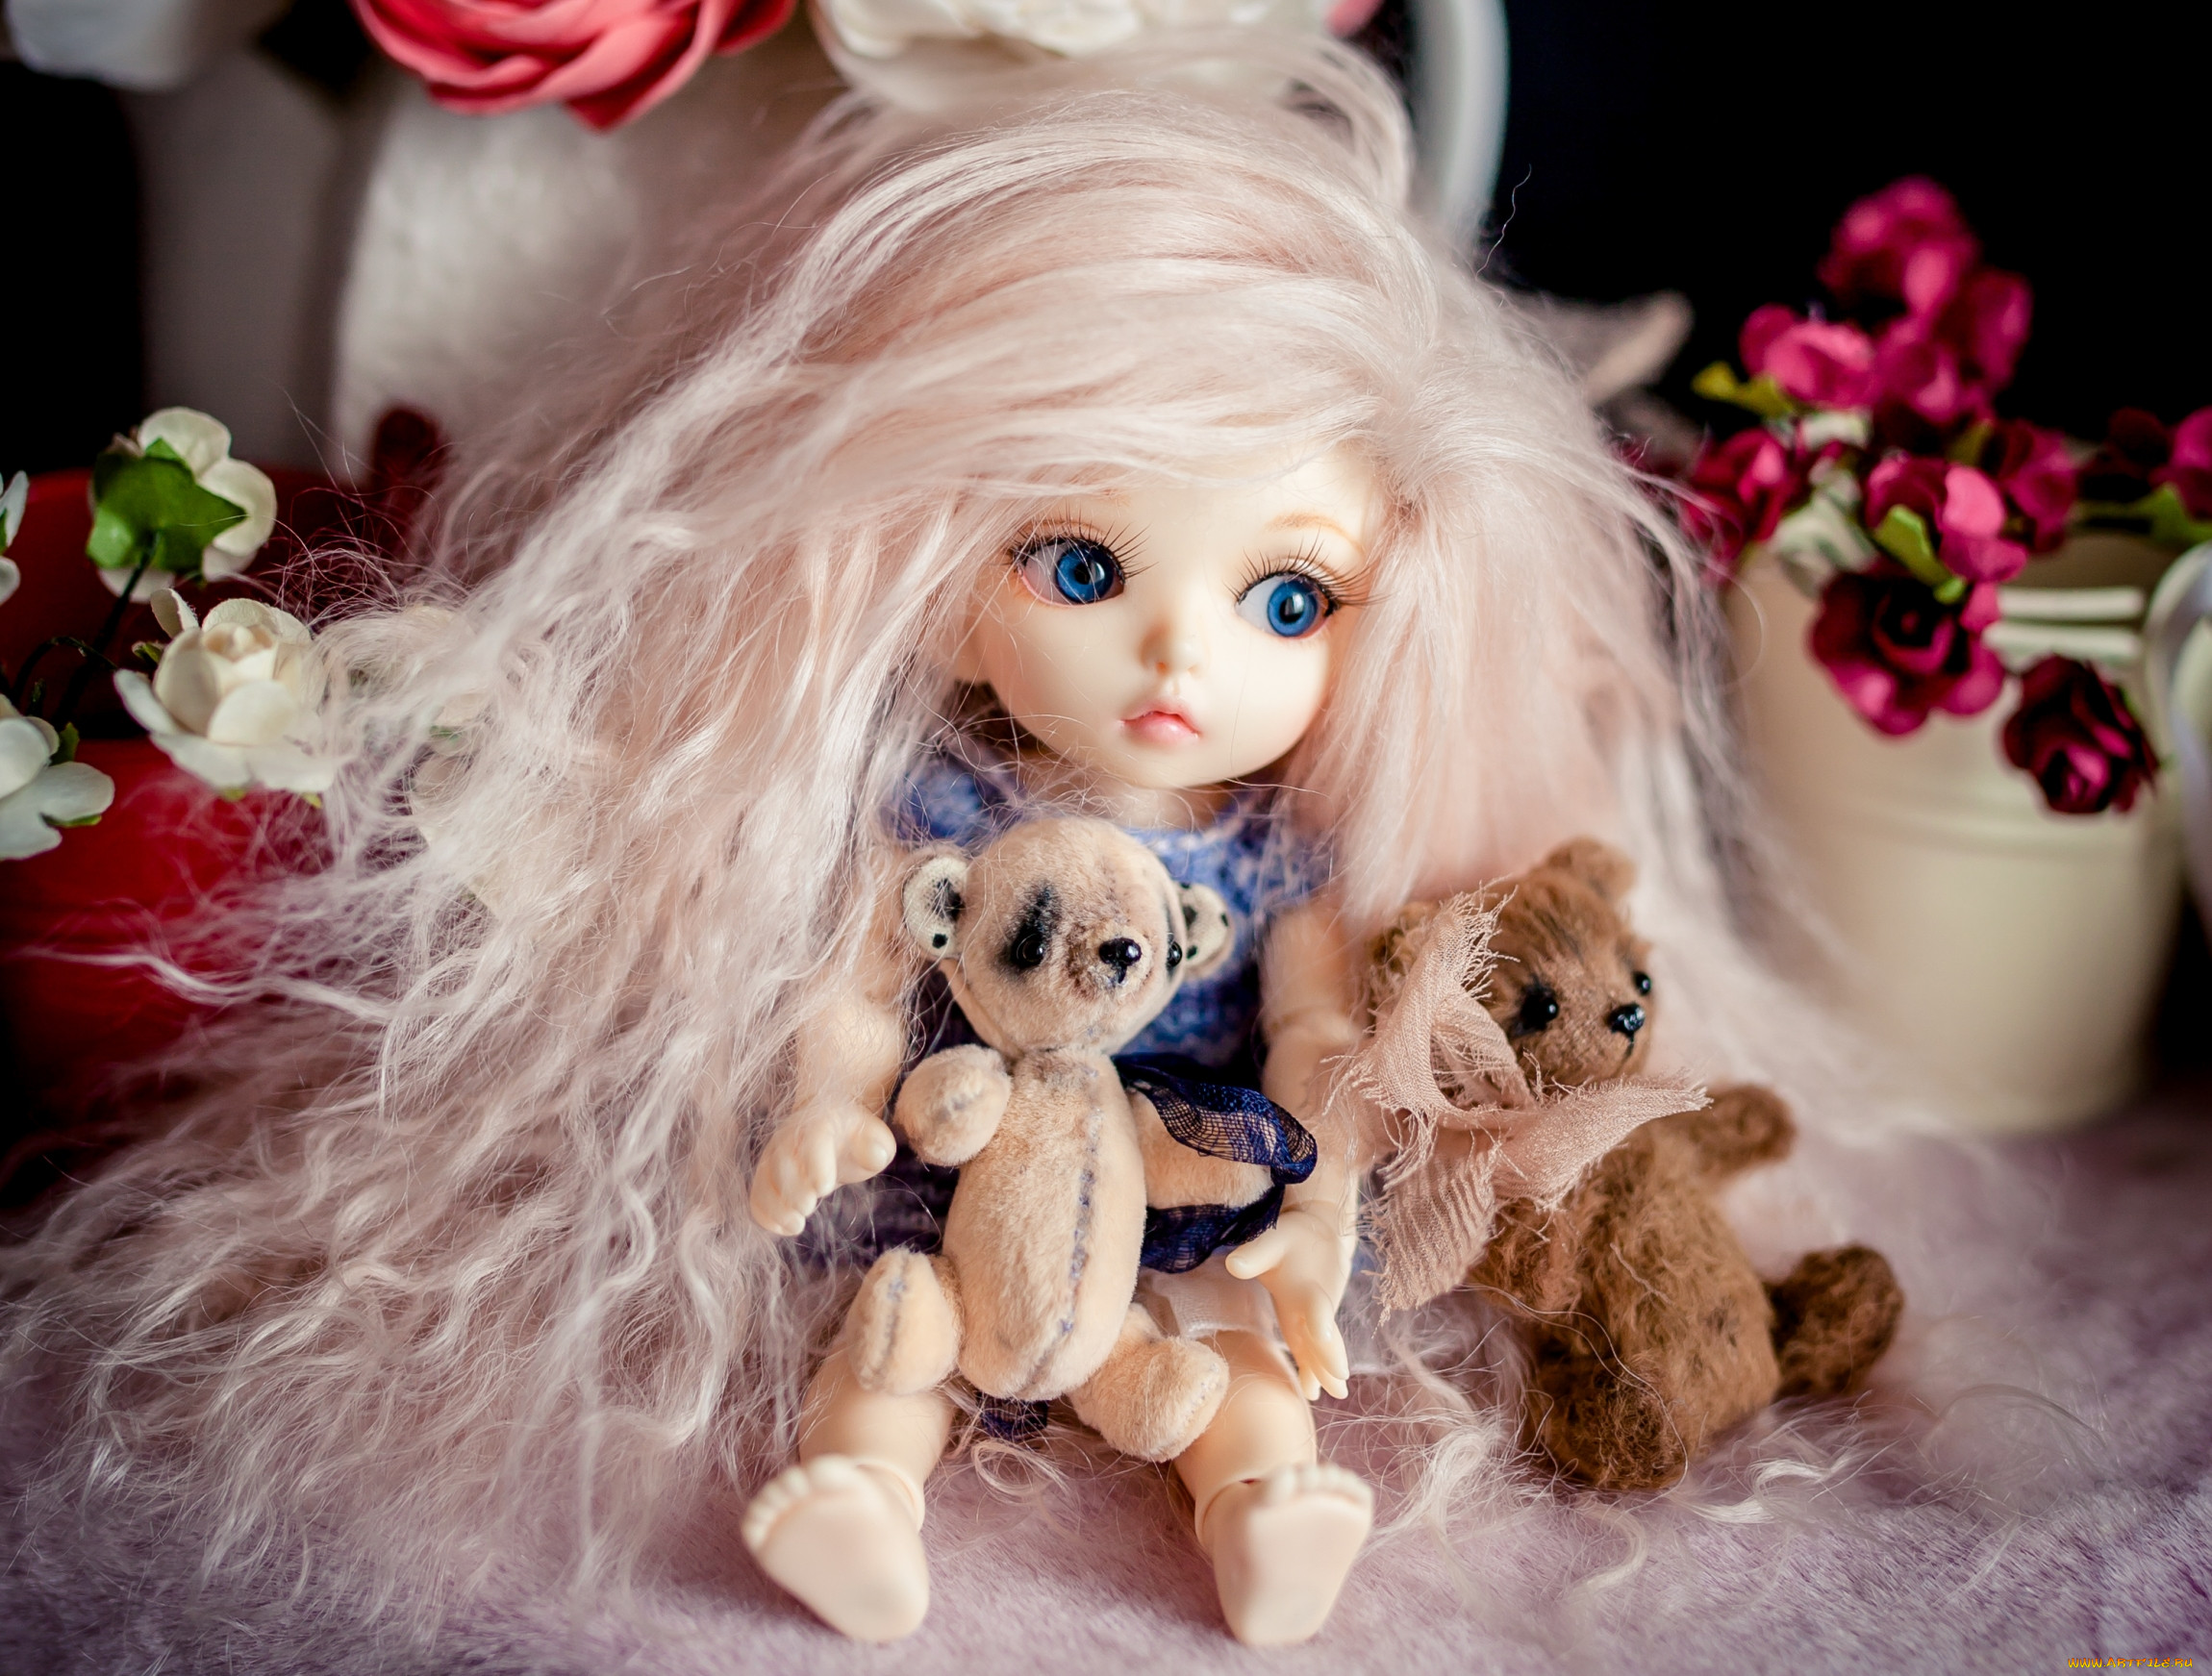 Много игрушек кукол. Красивые куклы. Самые красивые куклы. Красивые куклы для девочек. Самые красивые игрушки куклы.